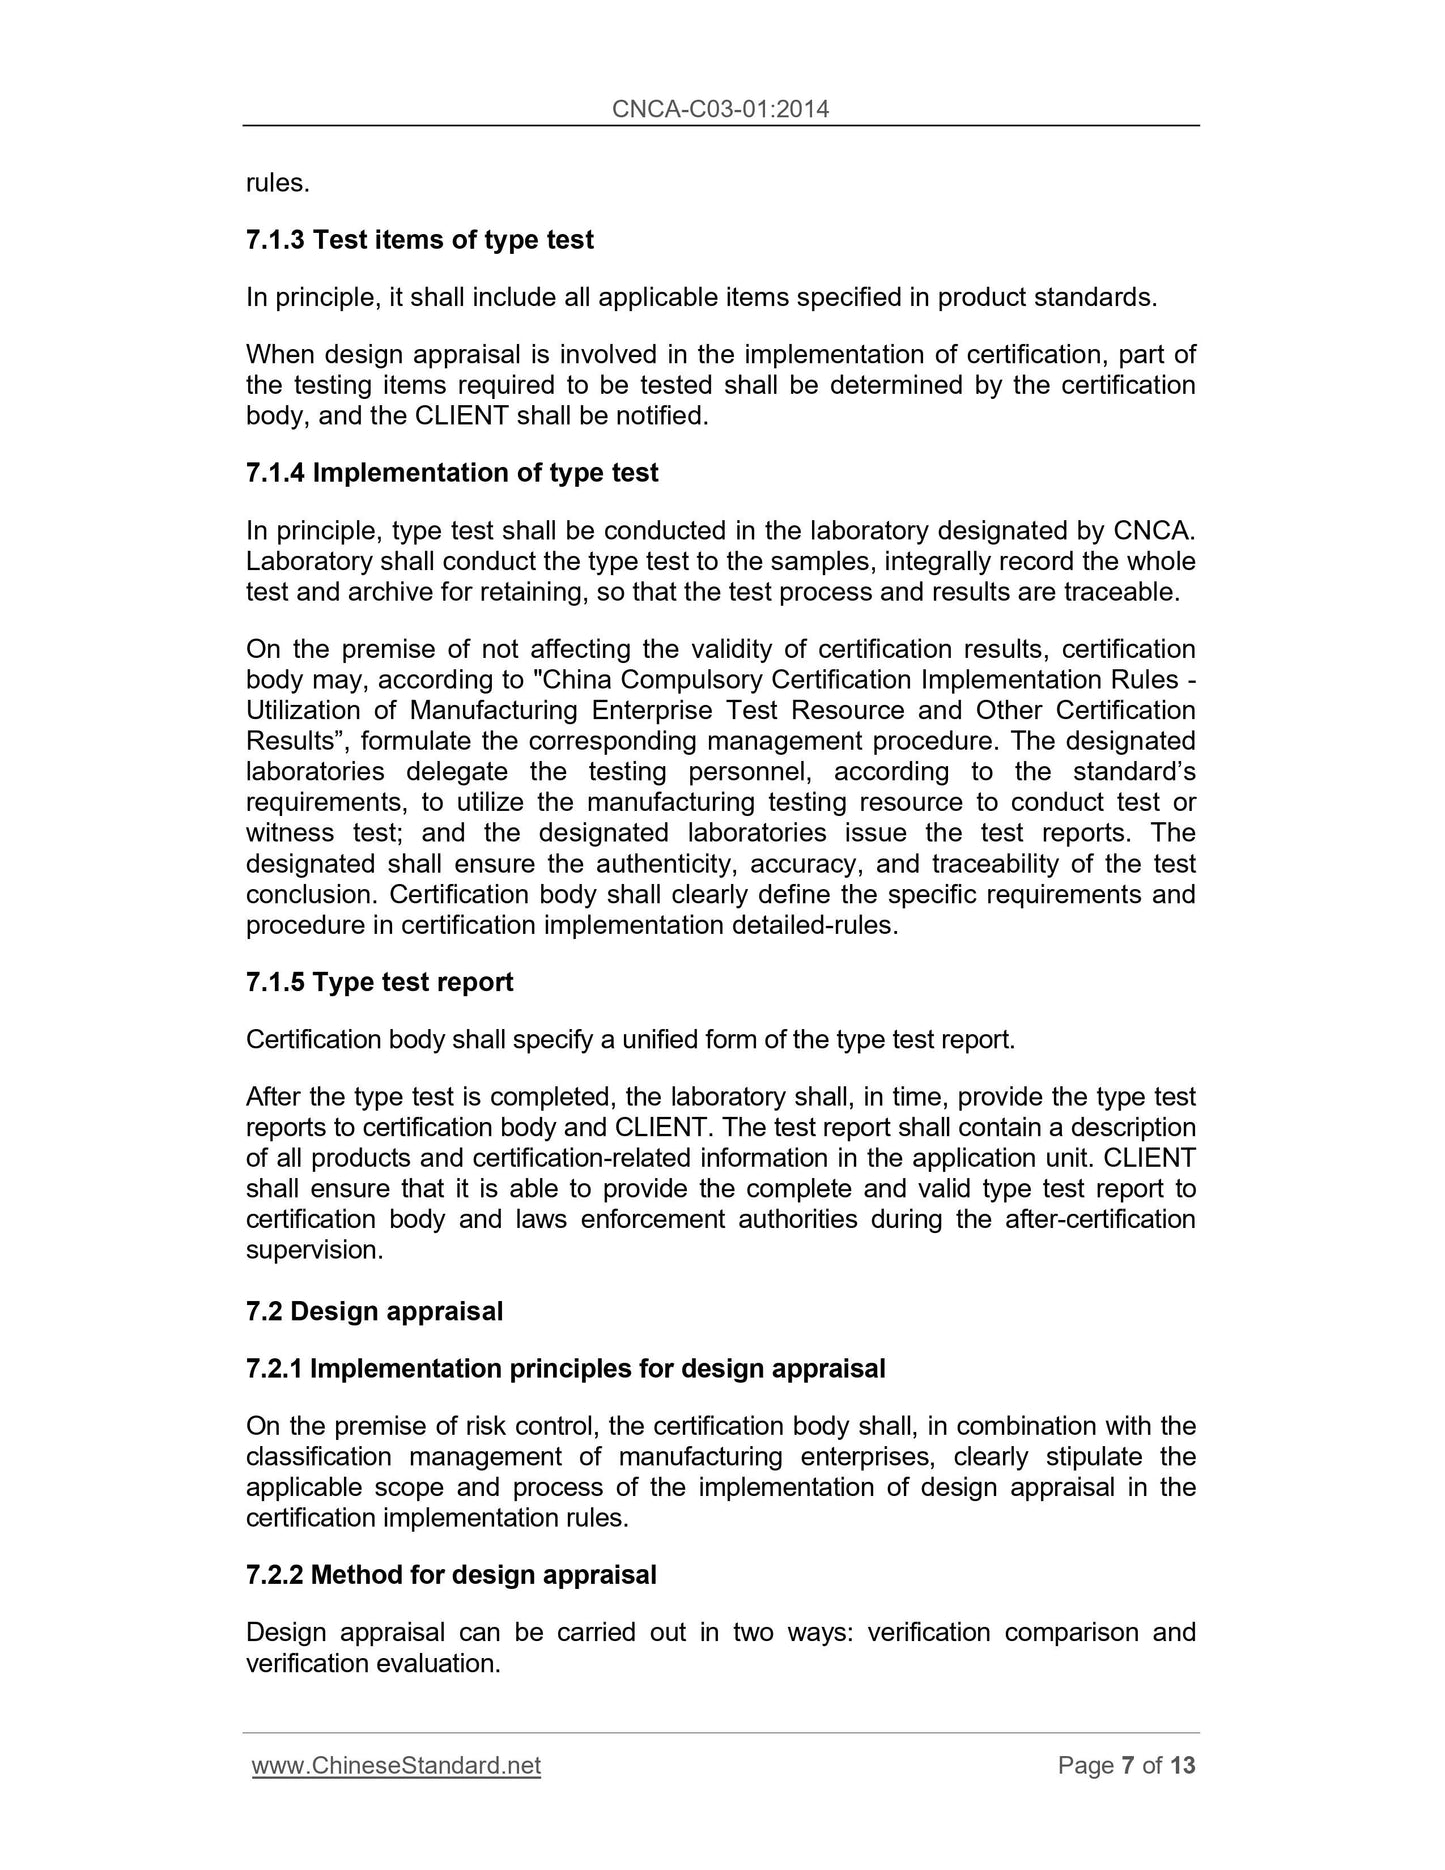 CNCA C03-01-2014 Page 5